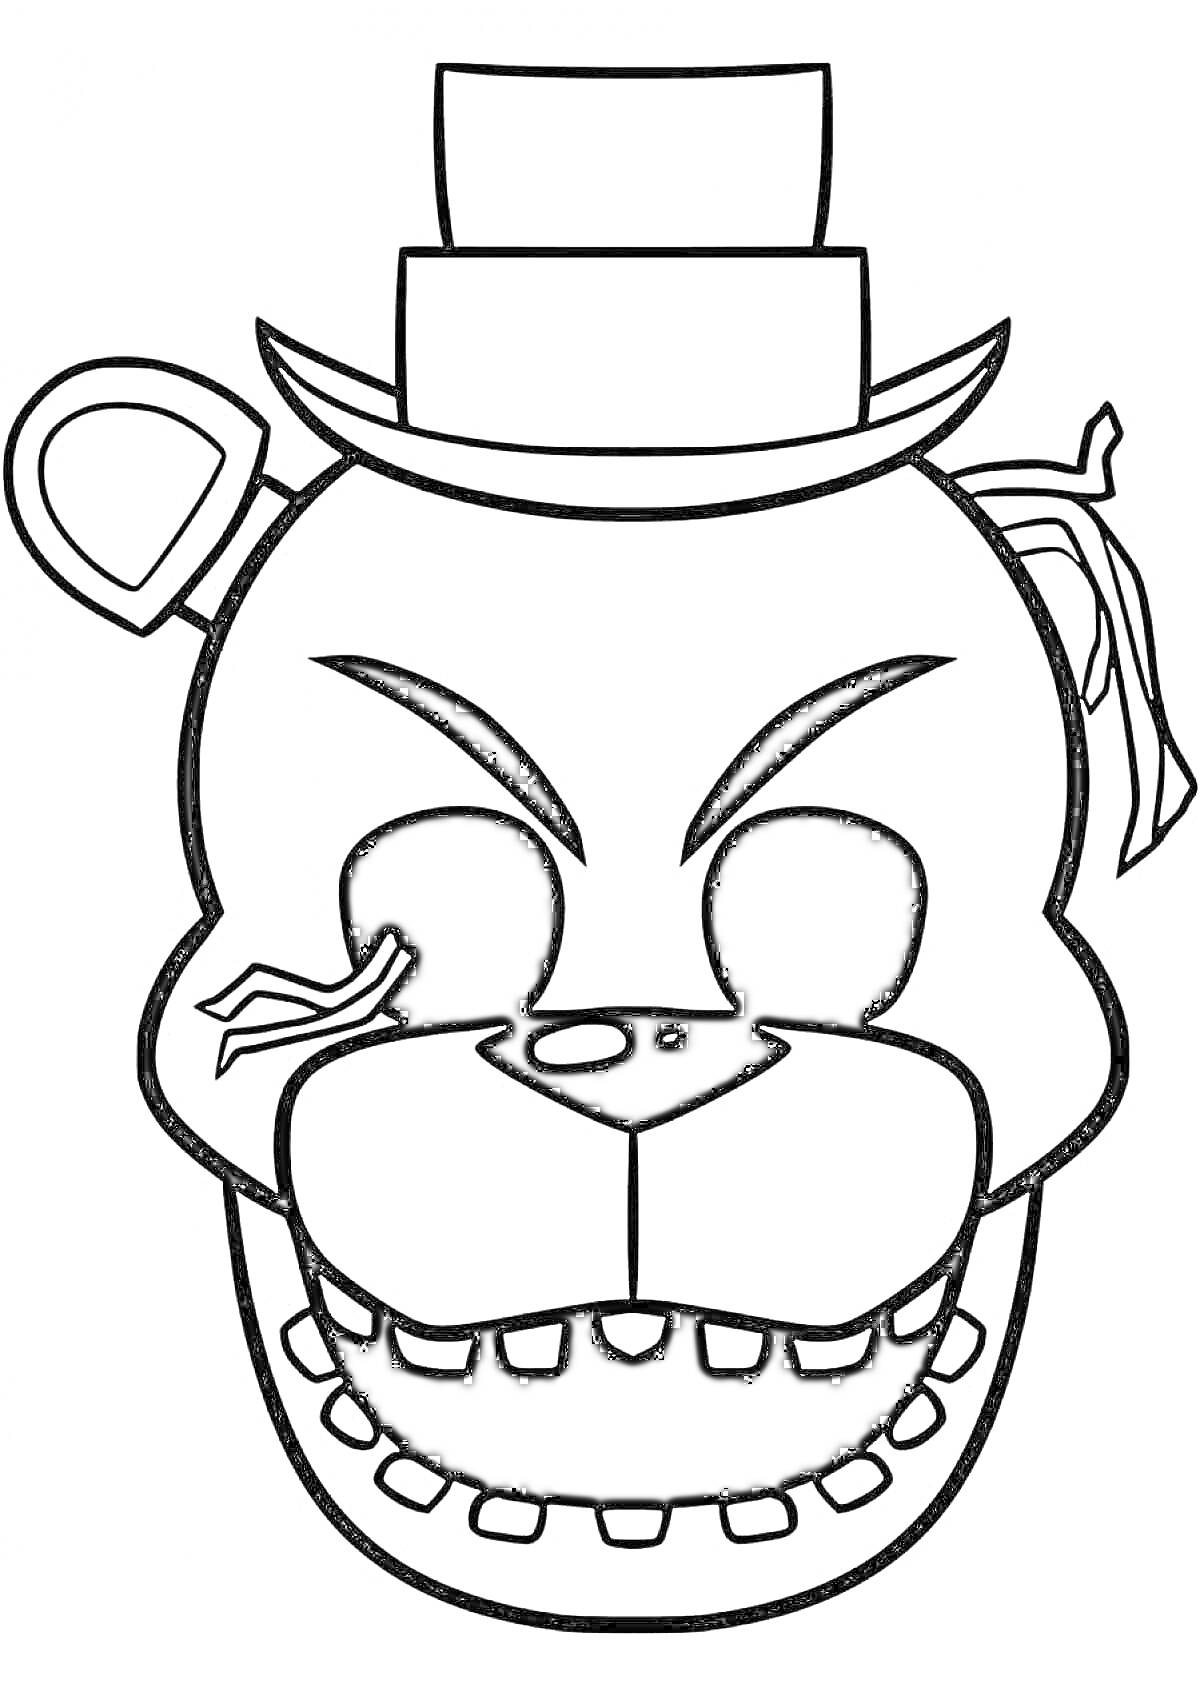 Раскраска Раскраска - лицо аниматроника Фредди с шляпой и повязкой на глазу